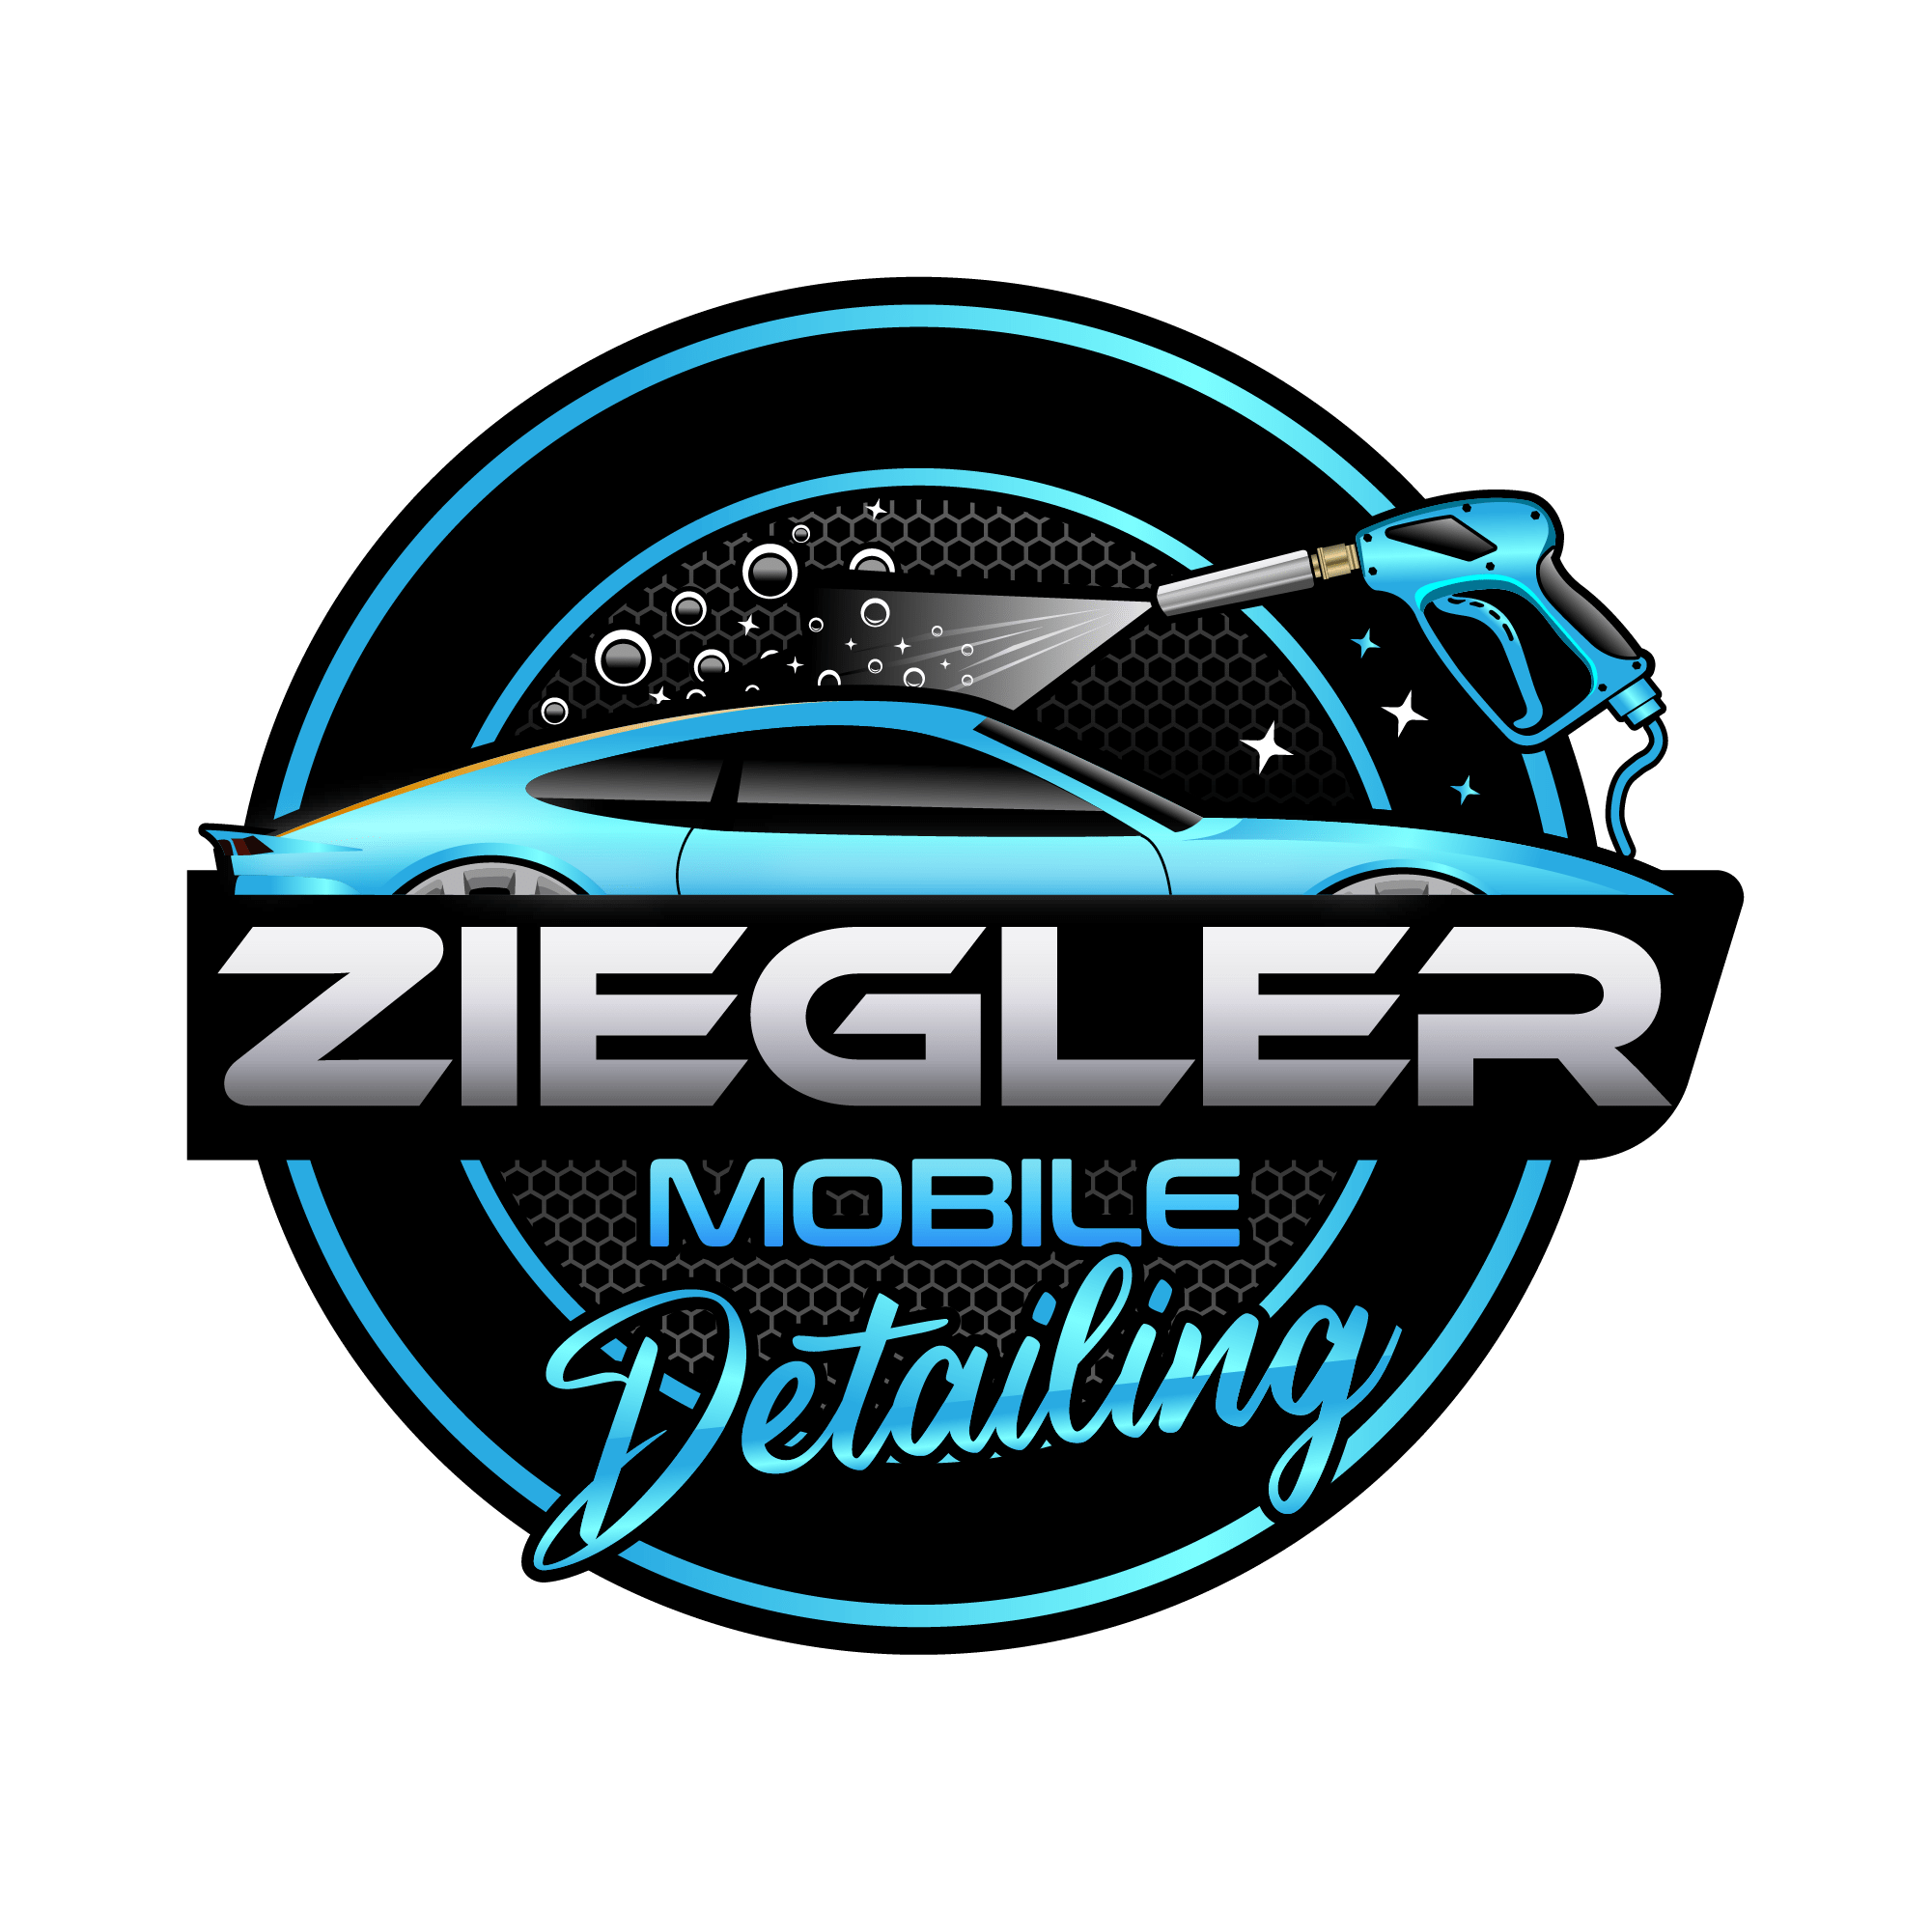 Ziegler Mobile Detailing